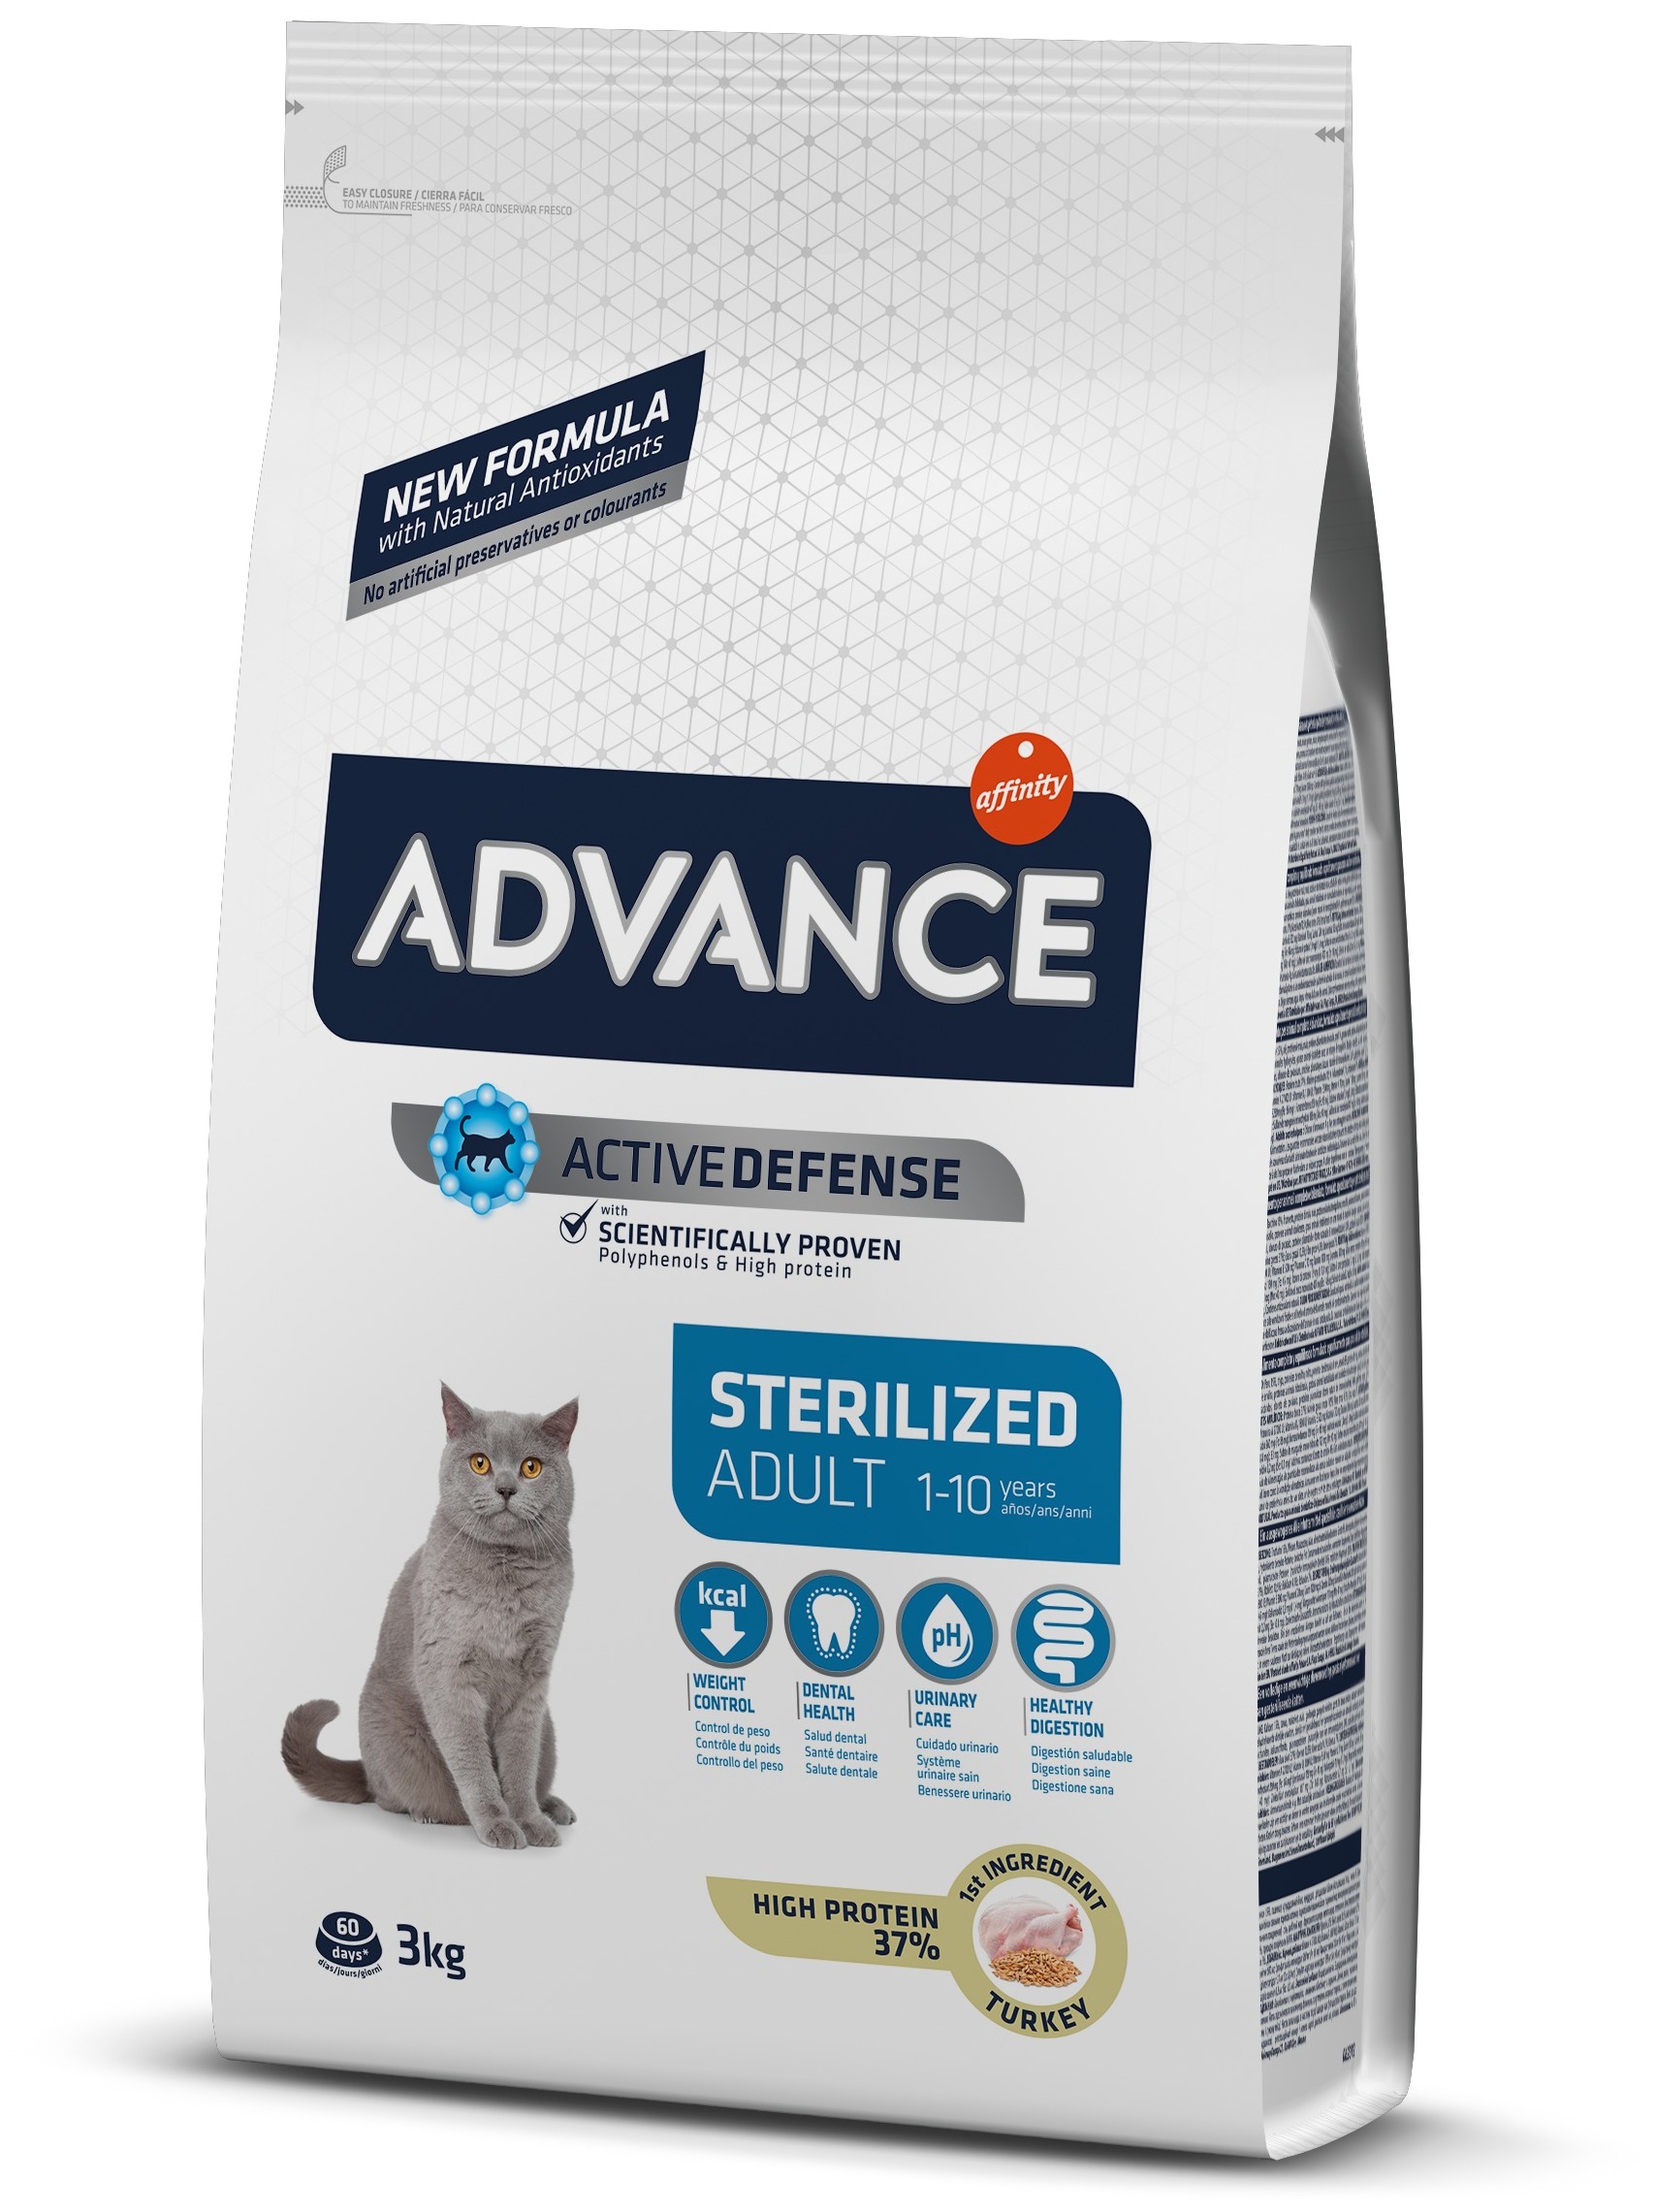 Advance Veterinary Diets Urinary pâtée pour chat adulte